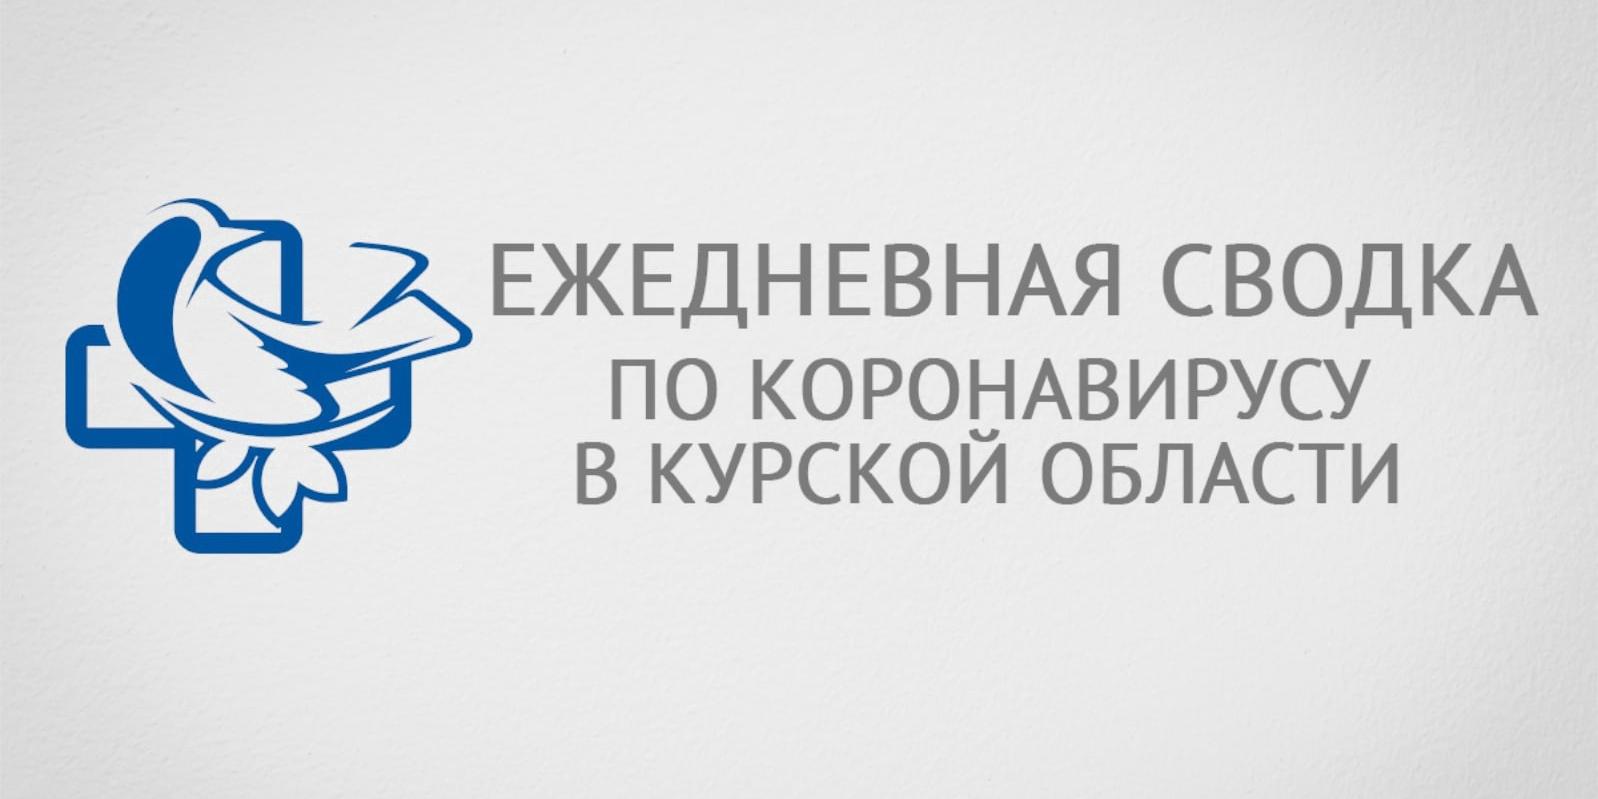 В Курской области количество заболевших ковидом снизилось до 87 человек